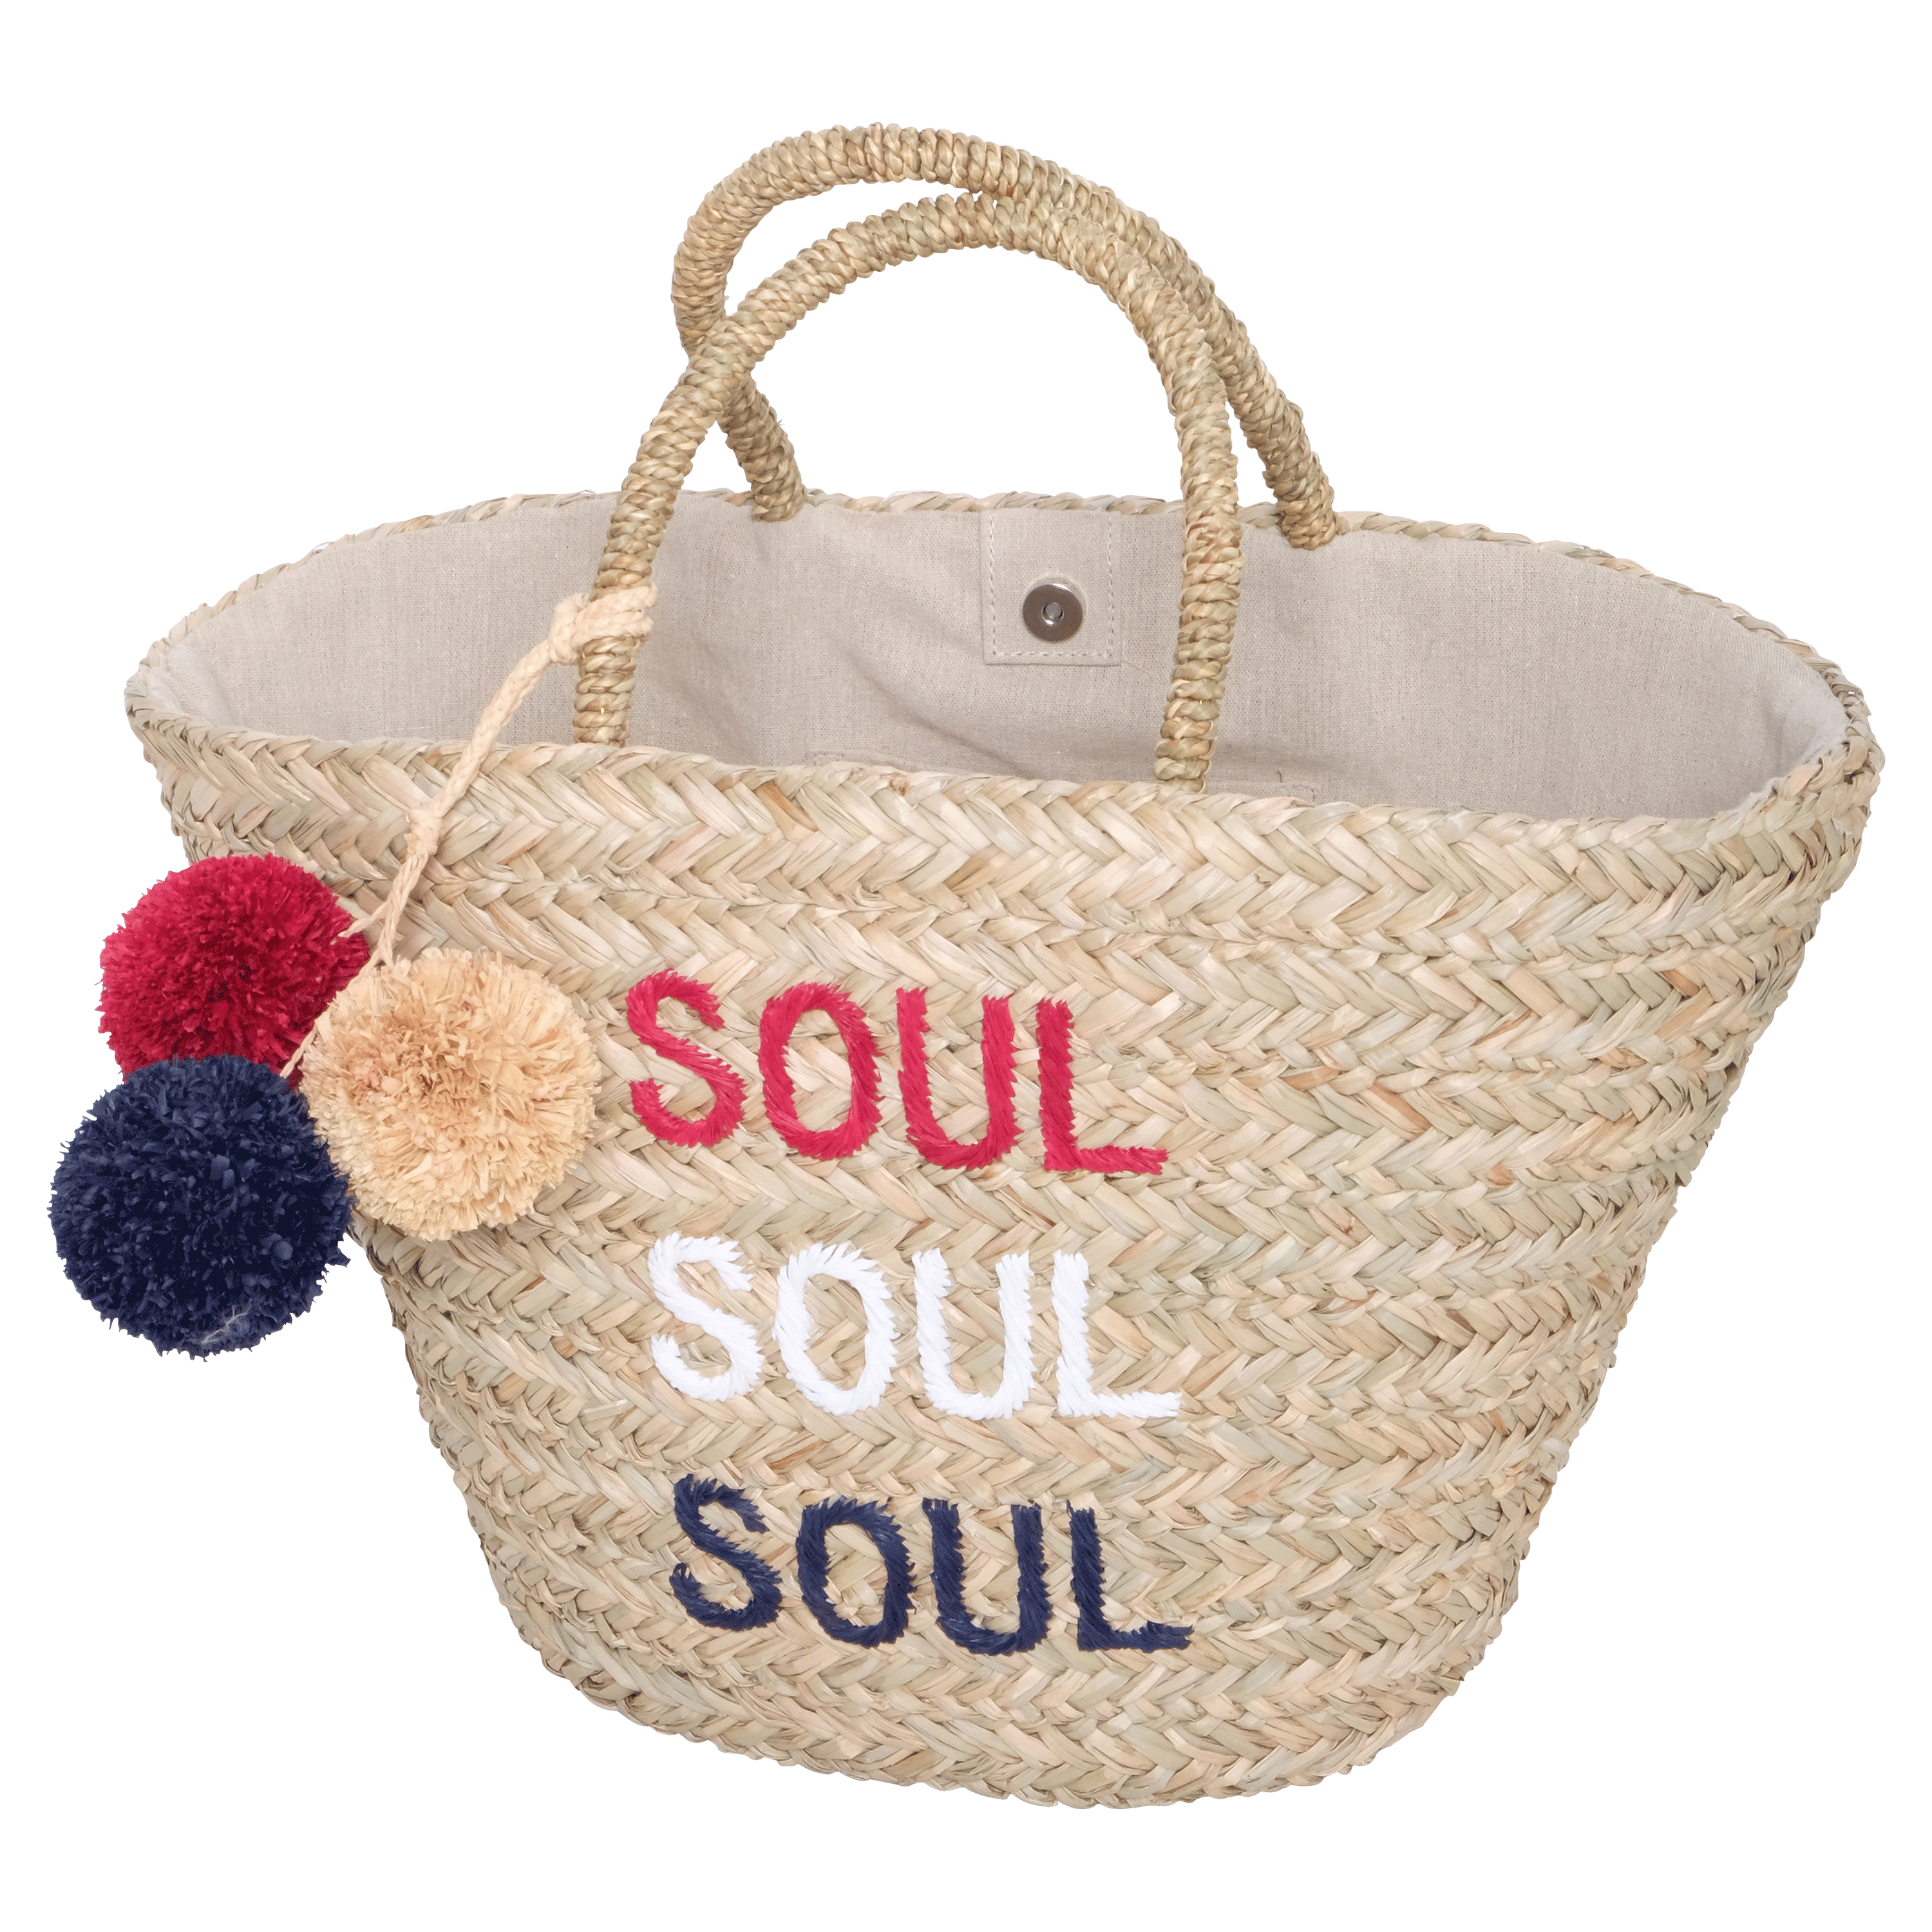 Soul Soul Soul PomPom Straw Bag - SoulCycle Shop